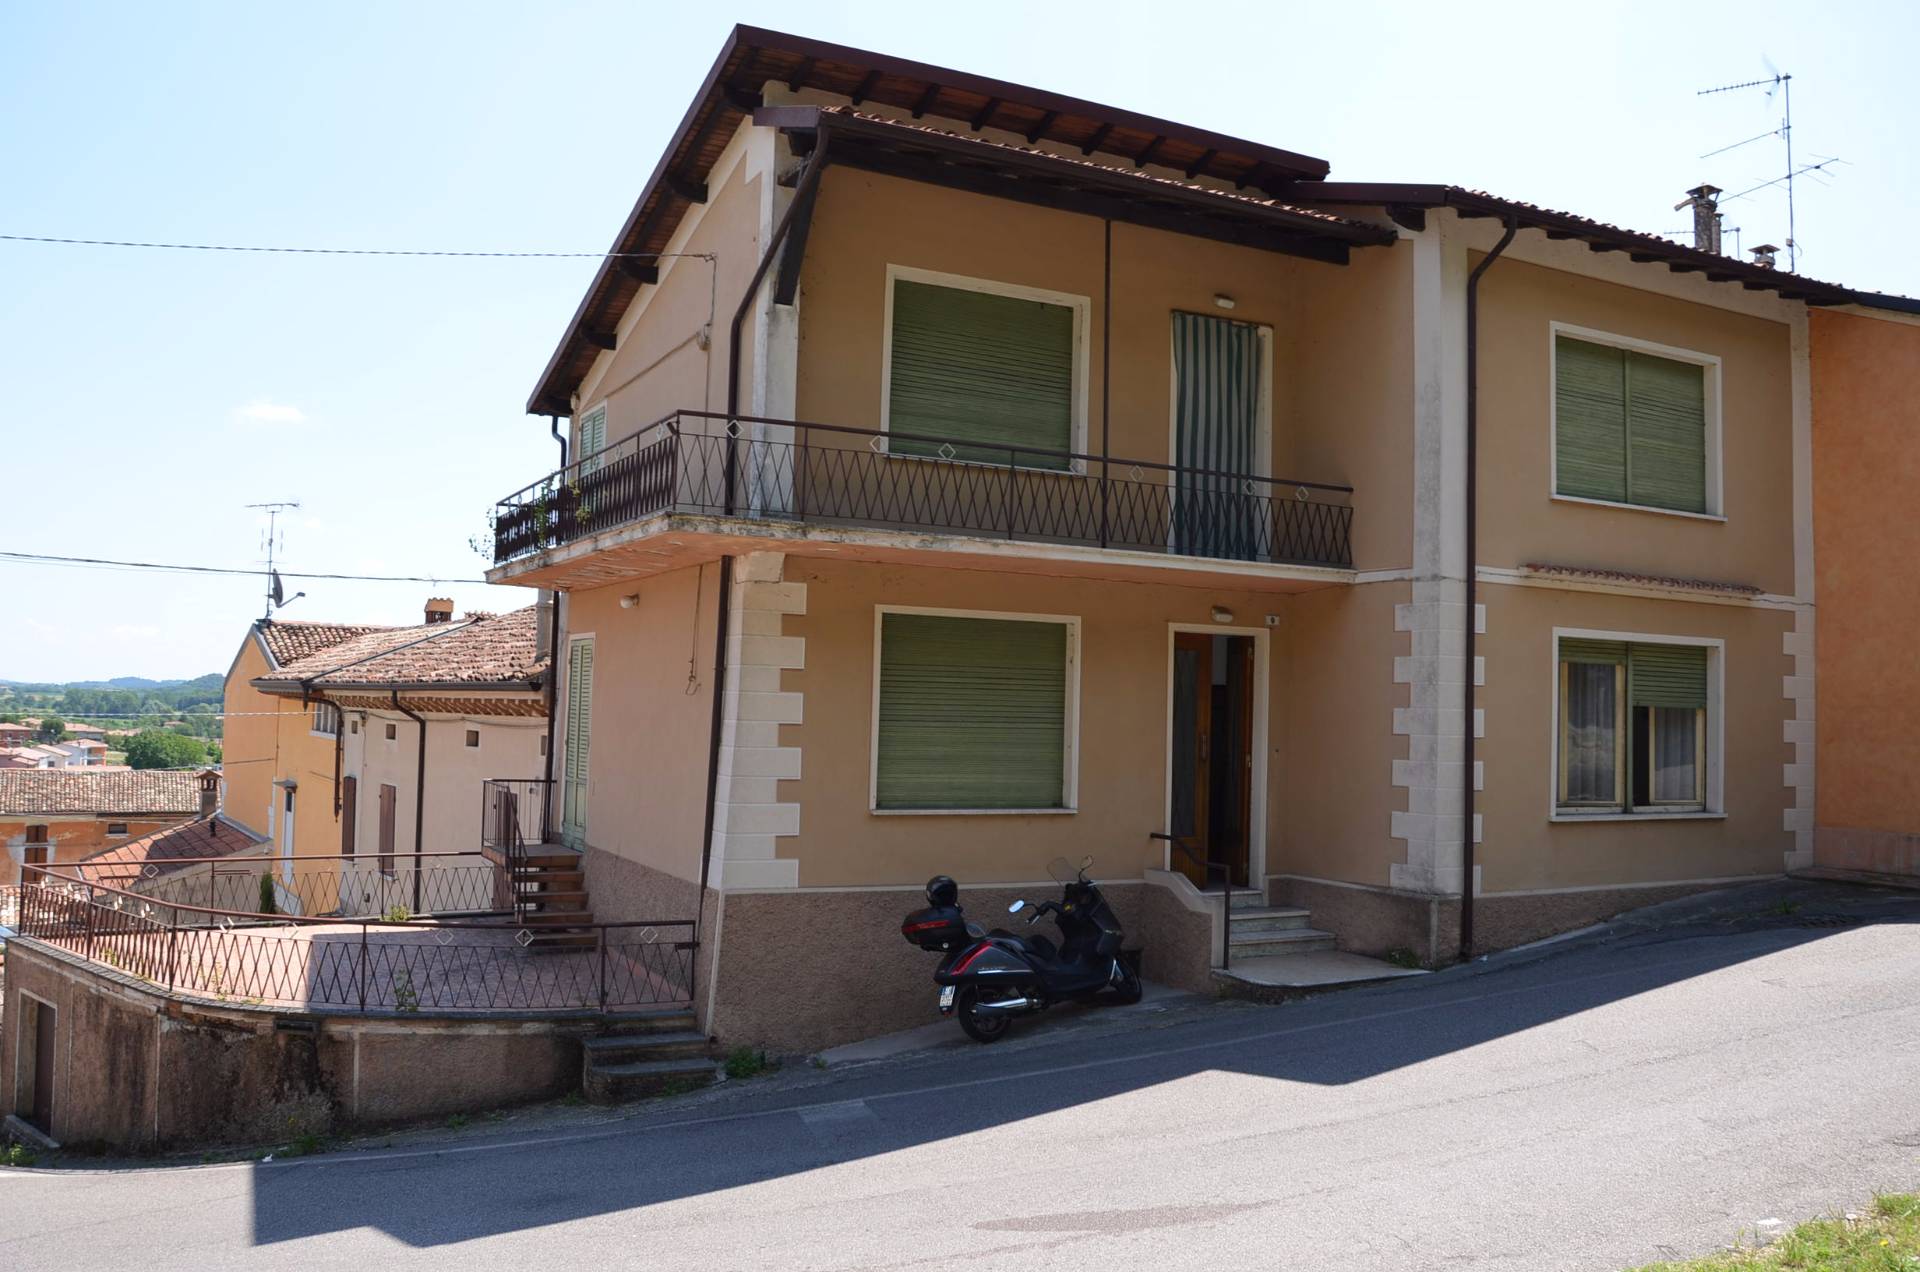 Rustico / Casale in vendita a Solferino, 5 locali, prezzo € 92.000 | PortaleAgenzieImmobiliari.it